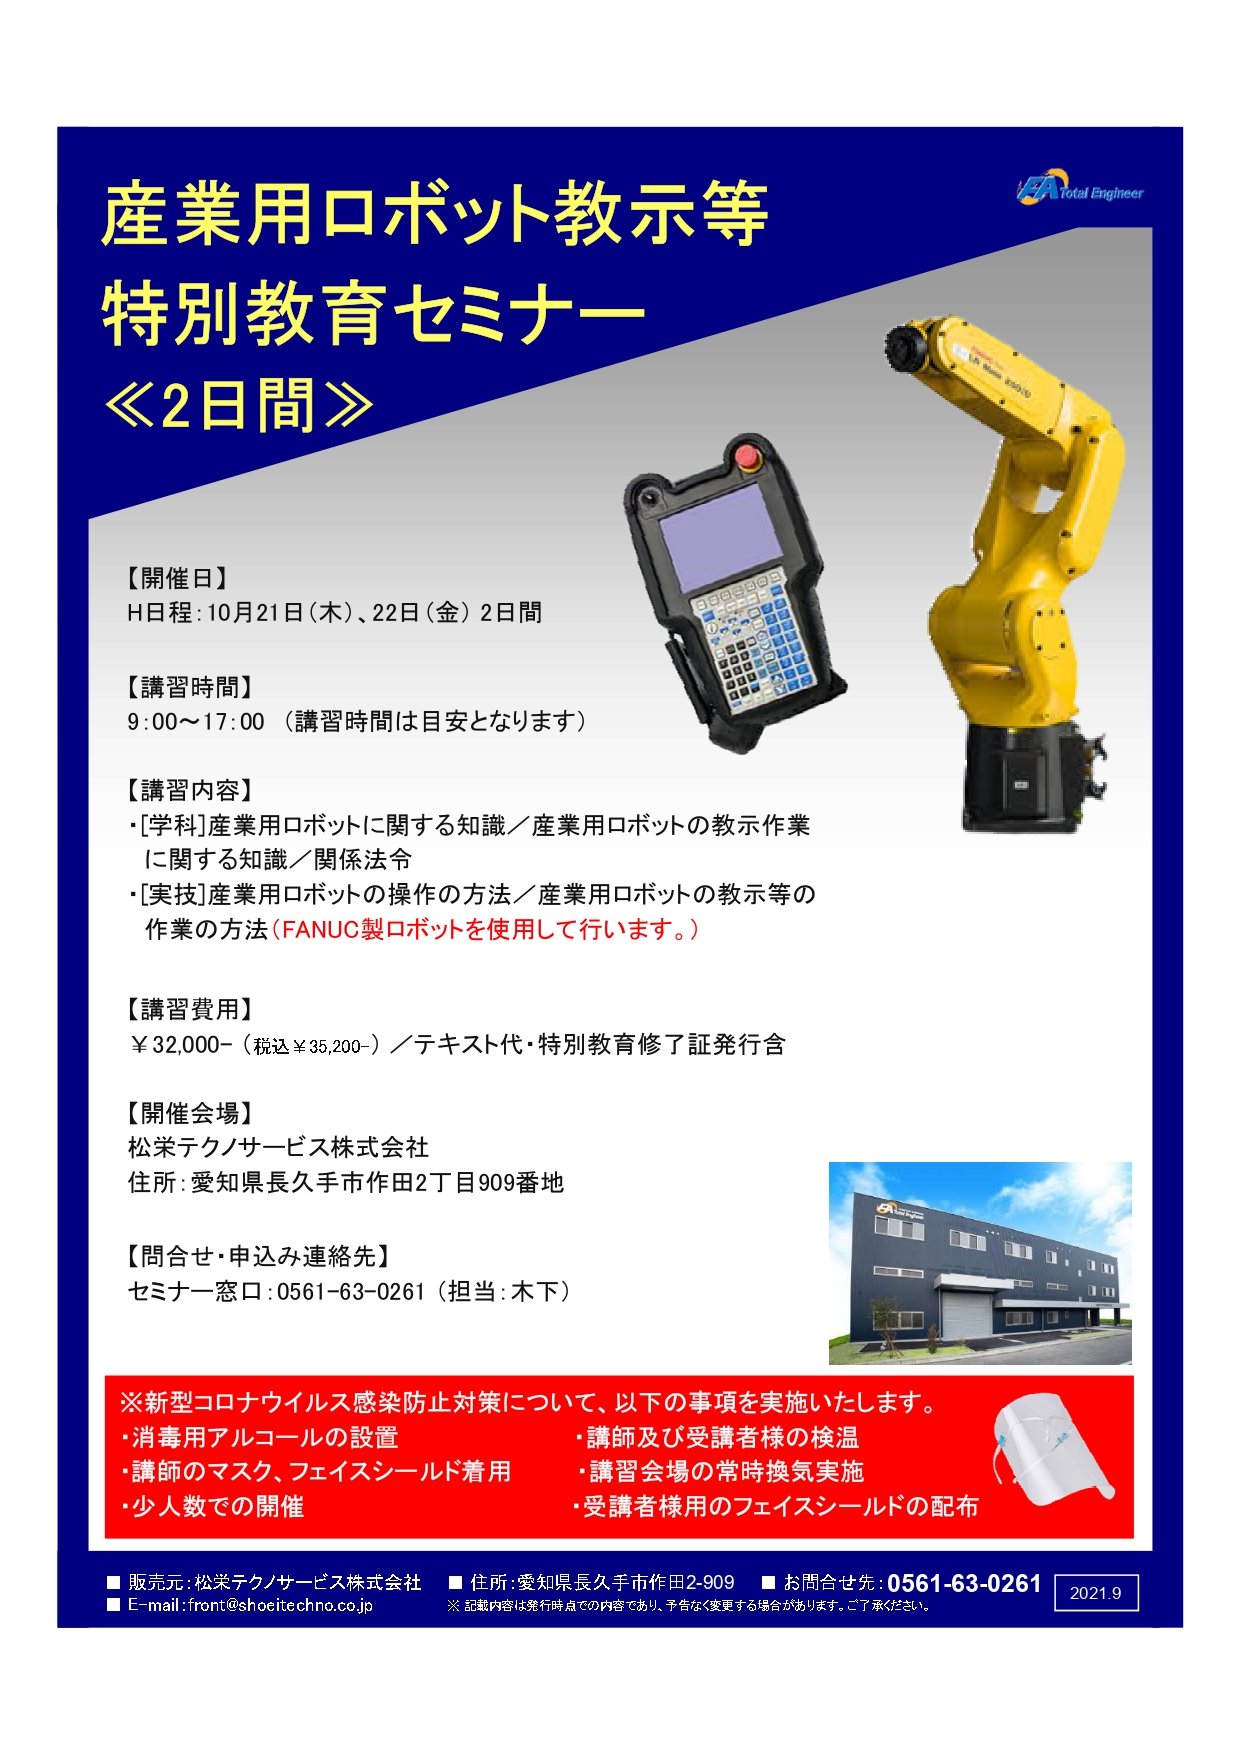 【終了しました】産業用ロボット特別教育（教示等）愛知会場開催のお知らせ【2021年10月】